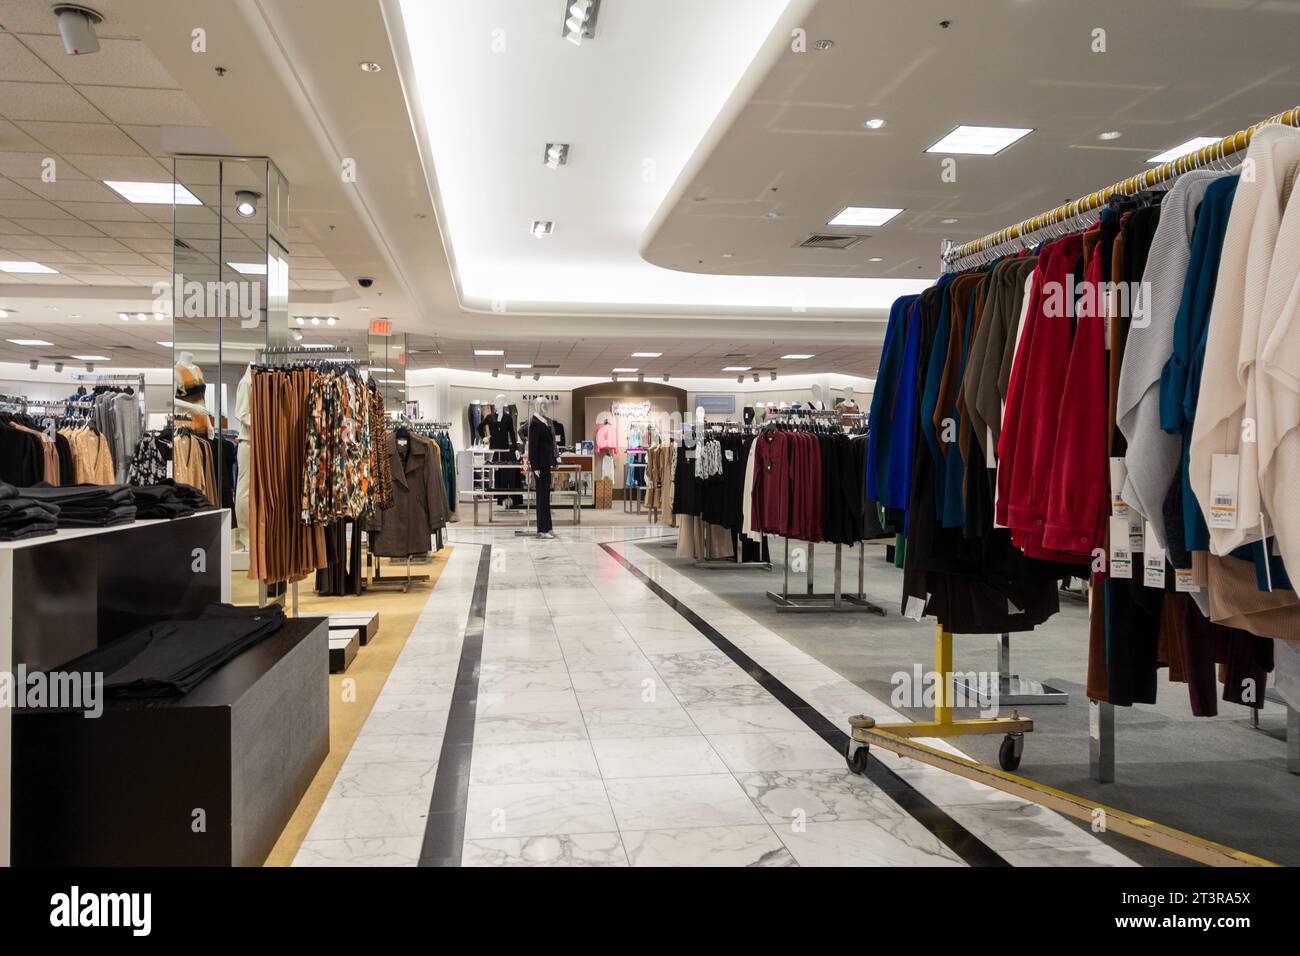 All'interno del grande magazzino Dillard's, un negozio di lusso che offre abbigliamento, accessori e articoli per la casa a Wichita, Kansas, Stati Uniti. Corridoio di abbigliamento. Foto Stock